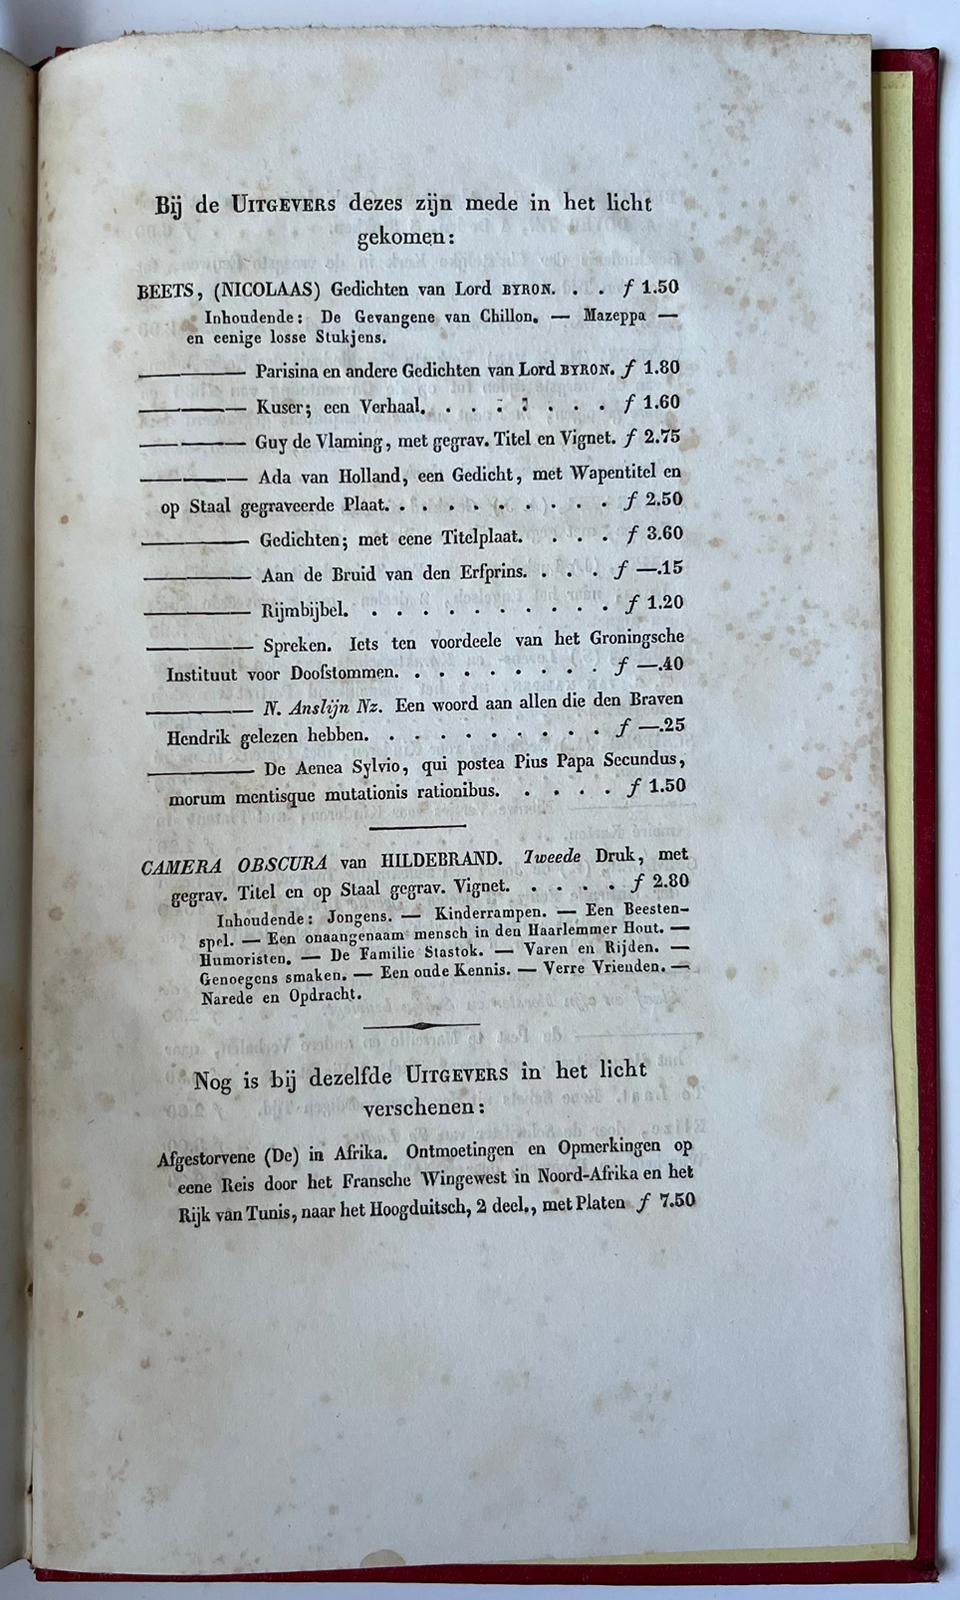 [Literature 1840] Proza en poezy. Verzameling van verspreide opstellen en verzen. Haarlem, Erven F. Bohn, [1840], [6] 170 [2] pp.